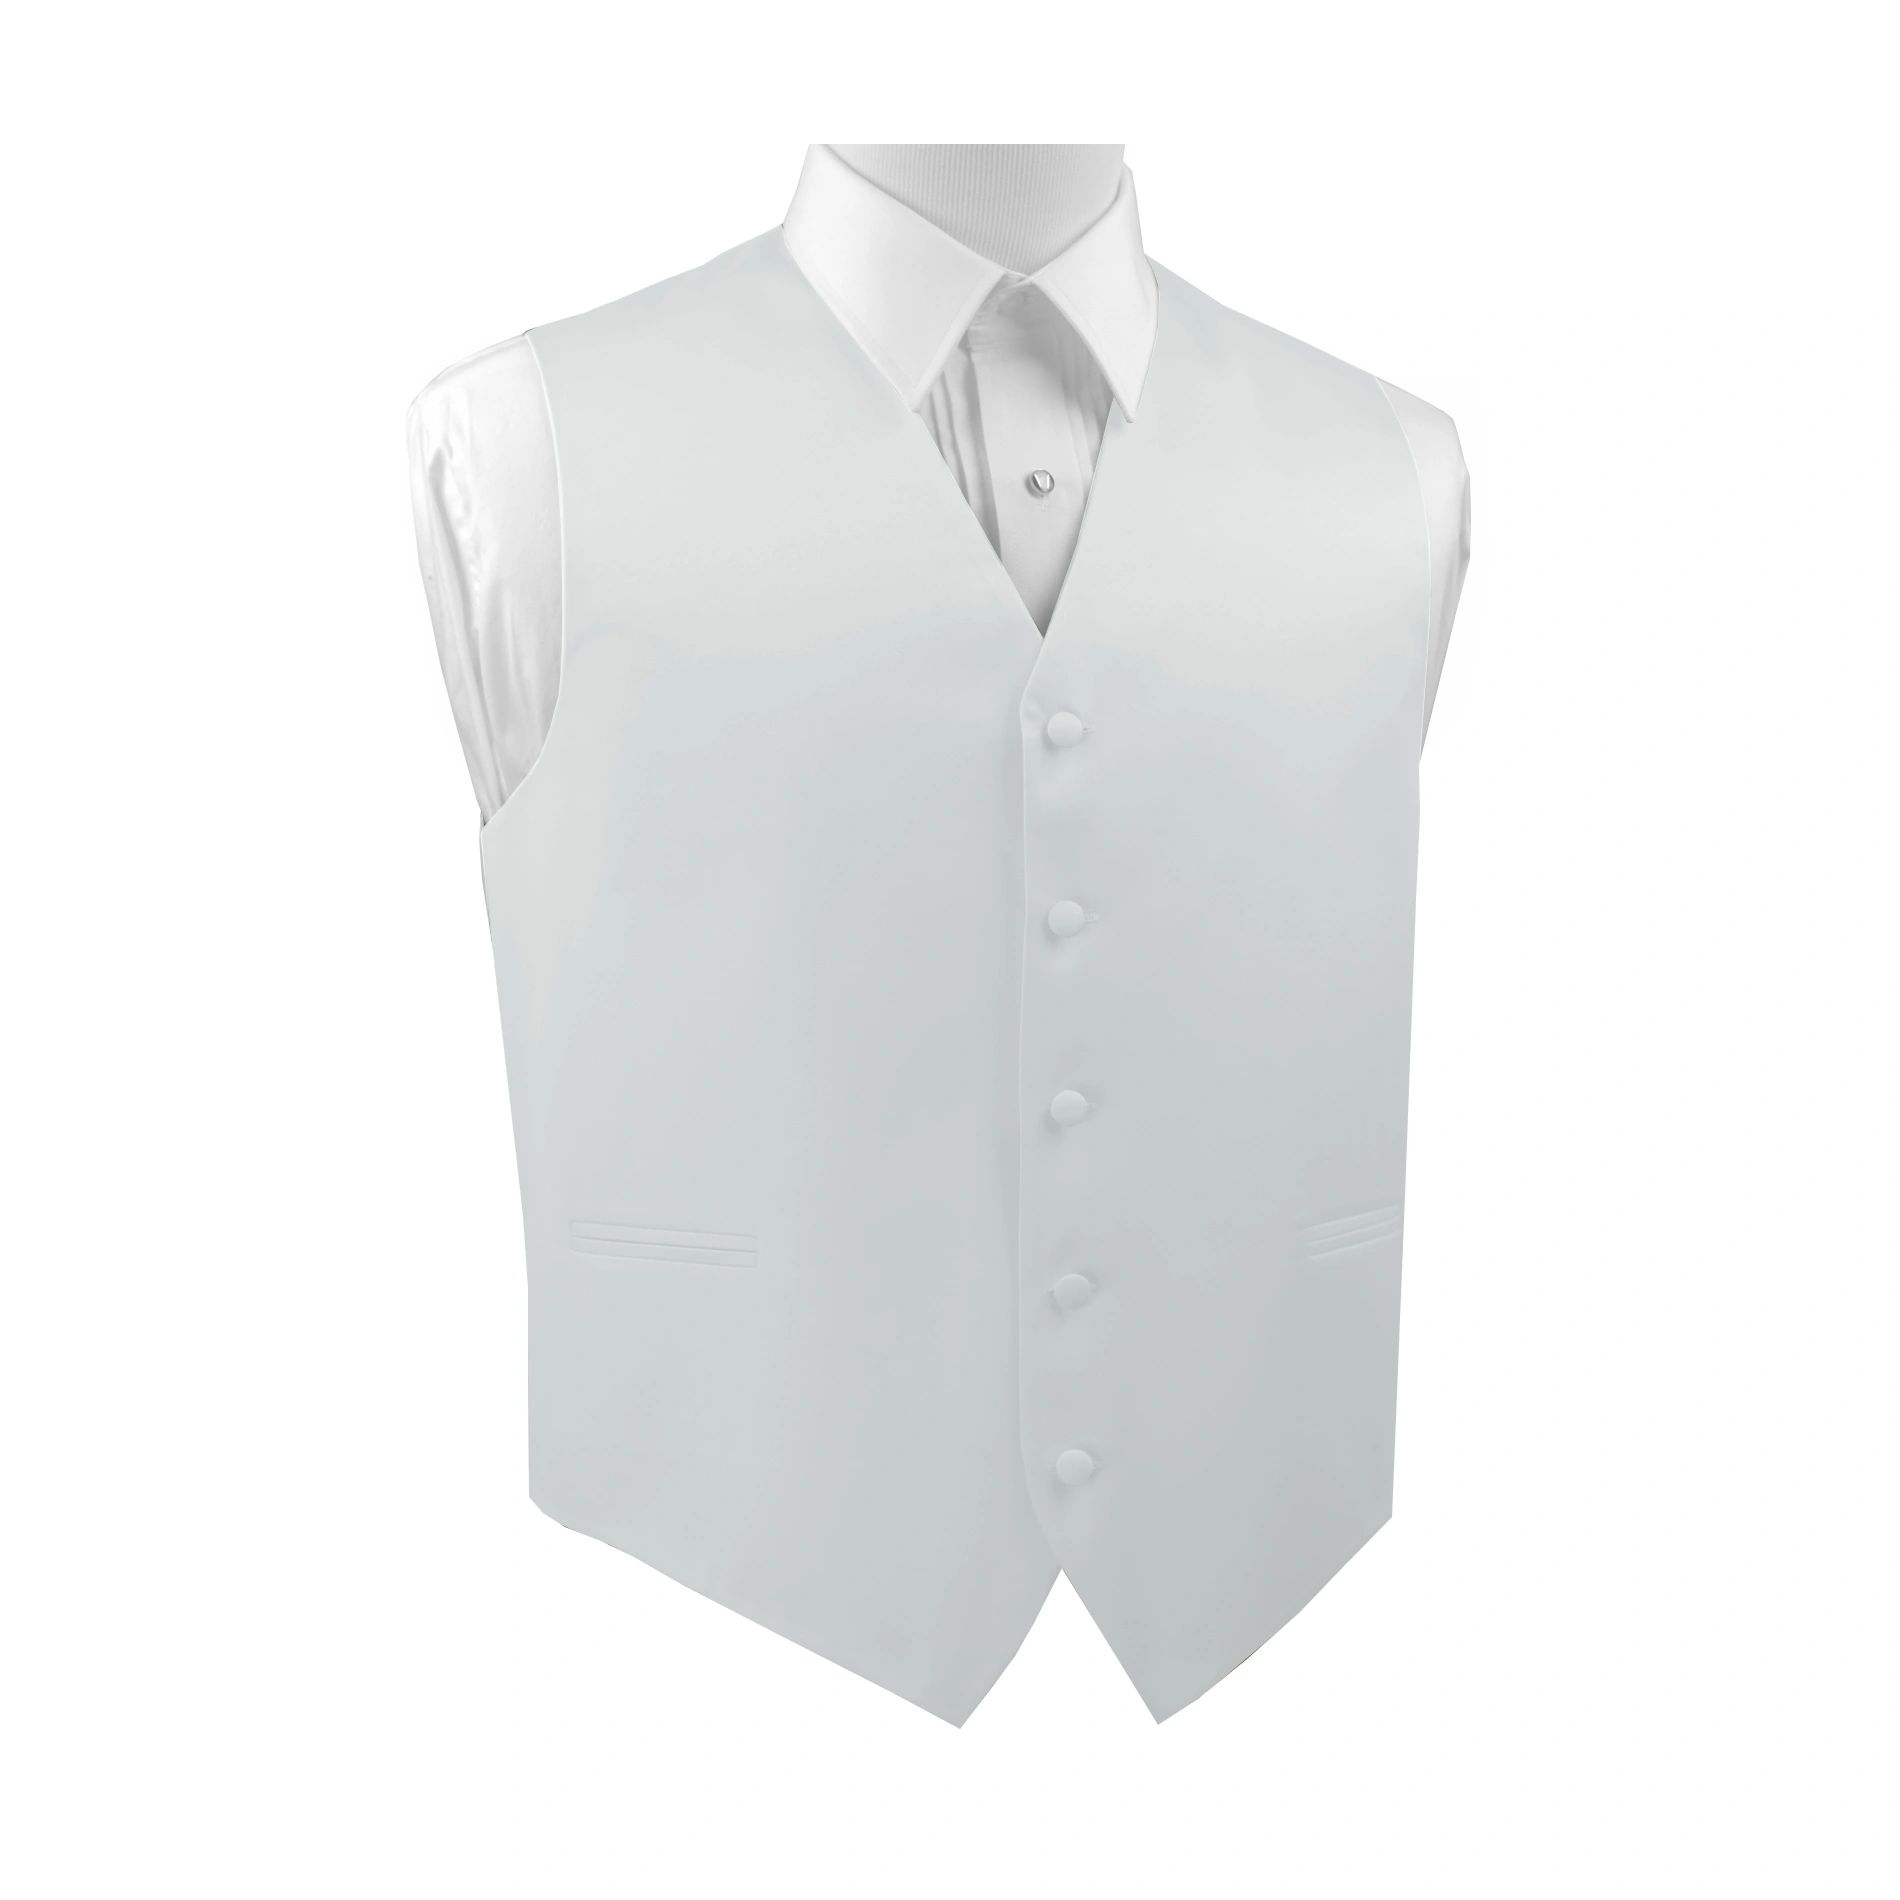 Brand Q Italian Design, Men's Formal Tuxedo Vest, in White